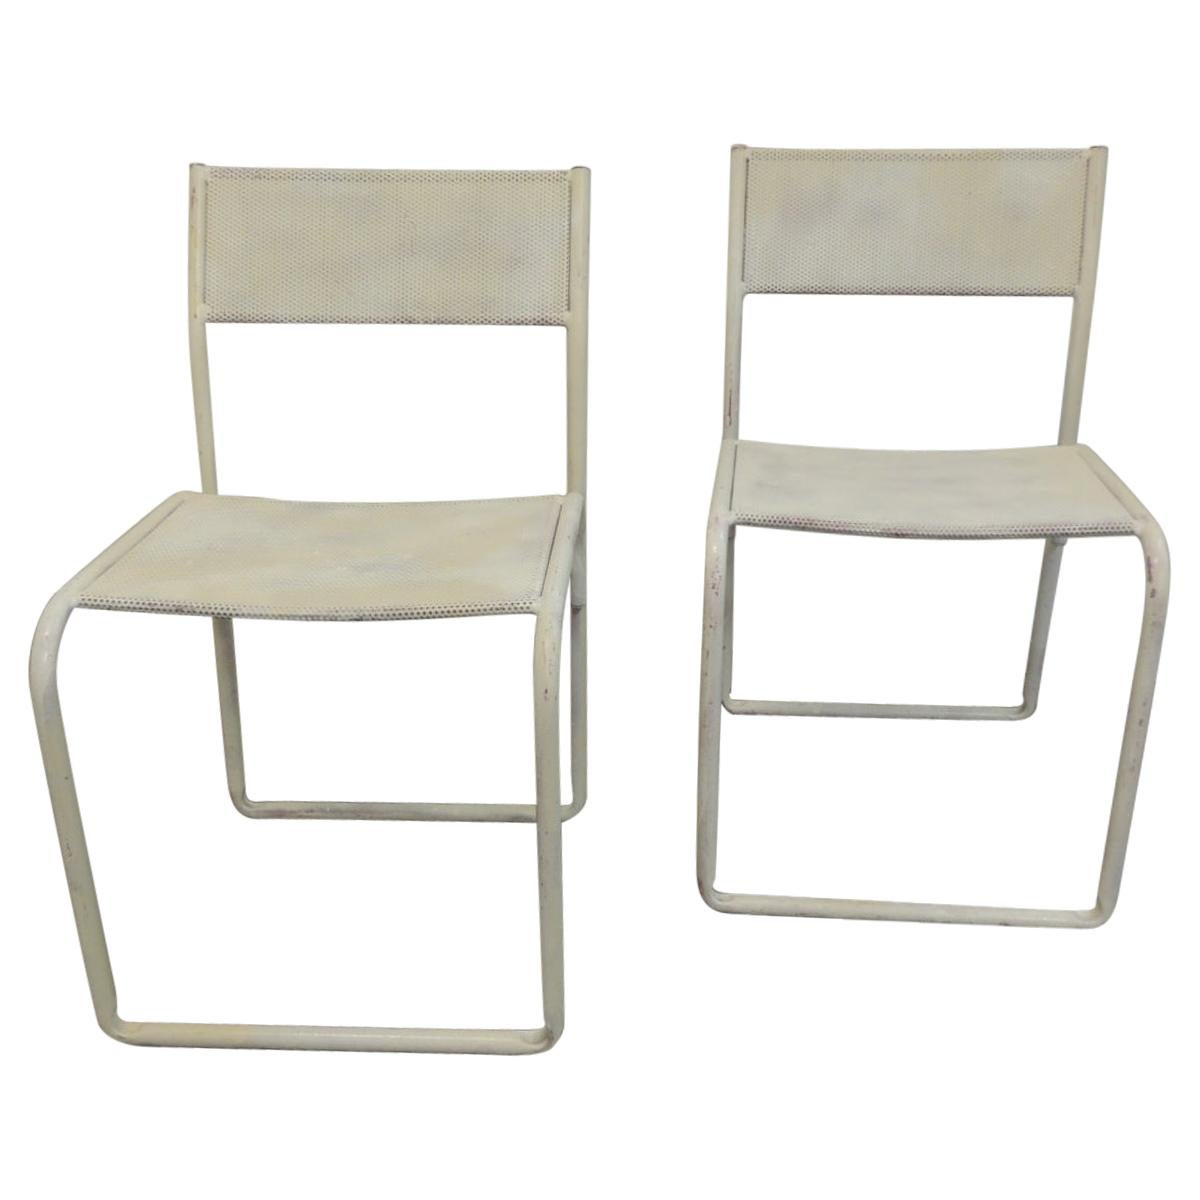 Pair of Mid-Century Modern White Mesh Child Chairs